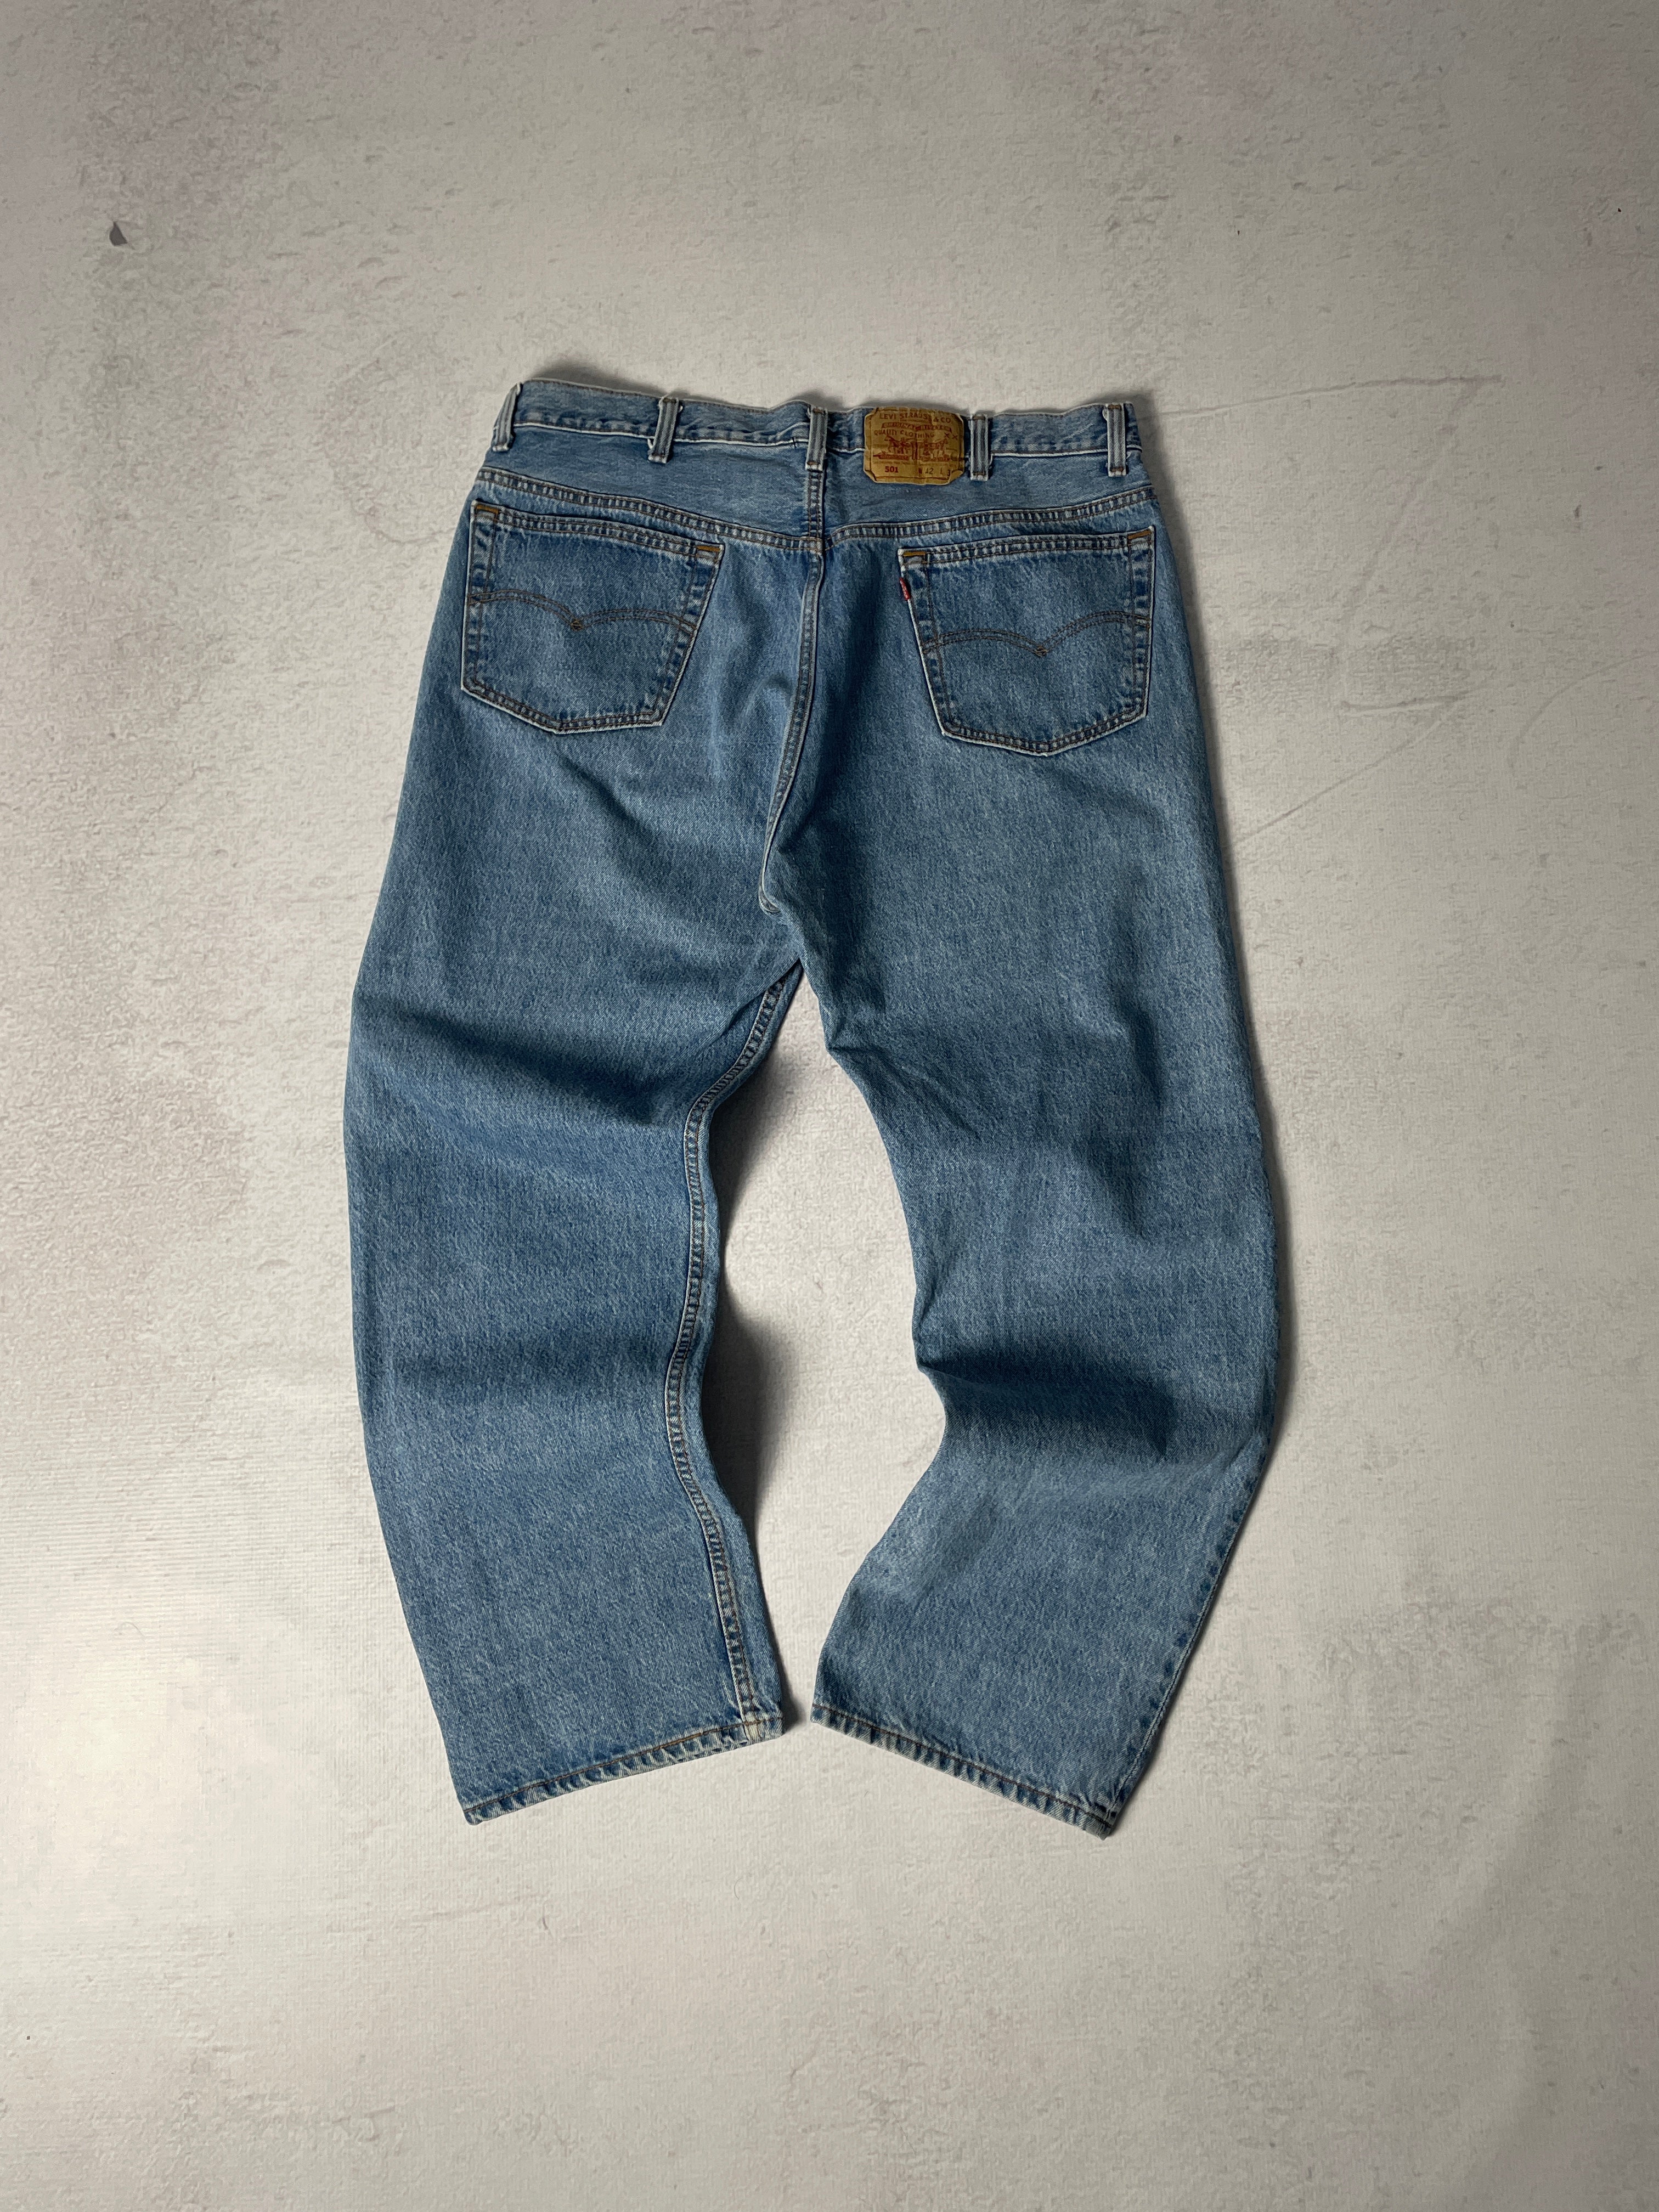 Vintage Levis 501 Jeans - Men's 42 x 30